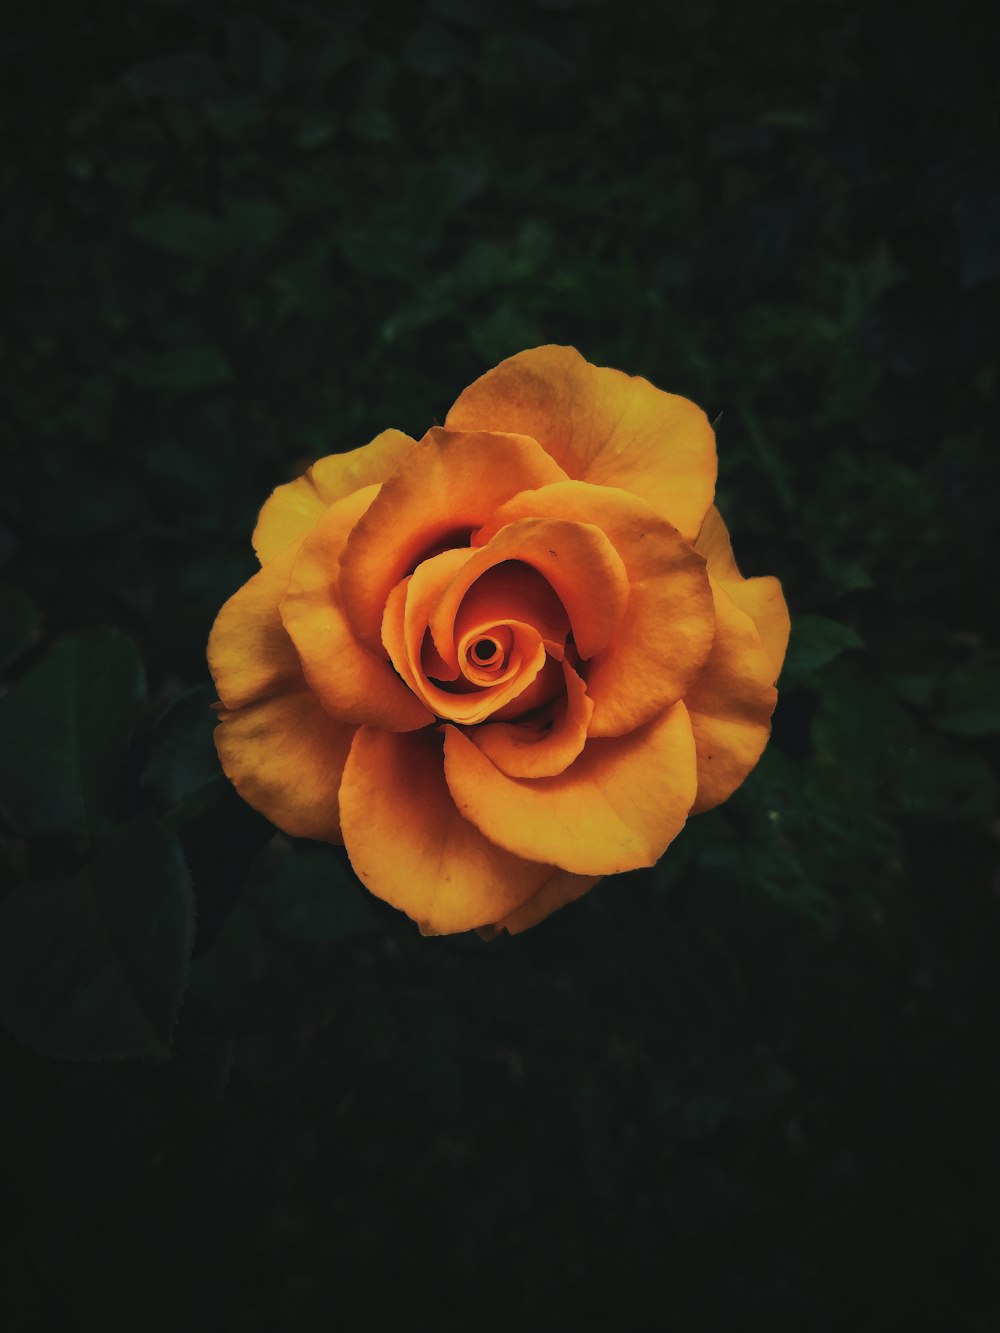 咲くオレンジ色のバラ、クローズアップ写真